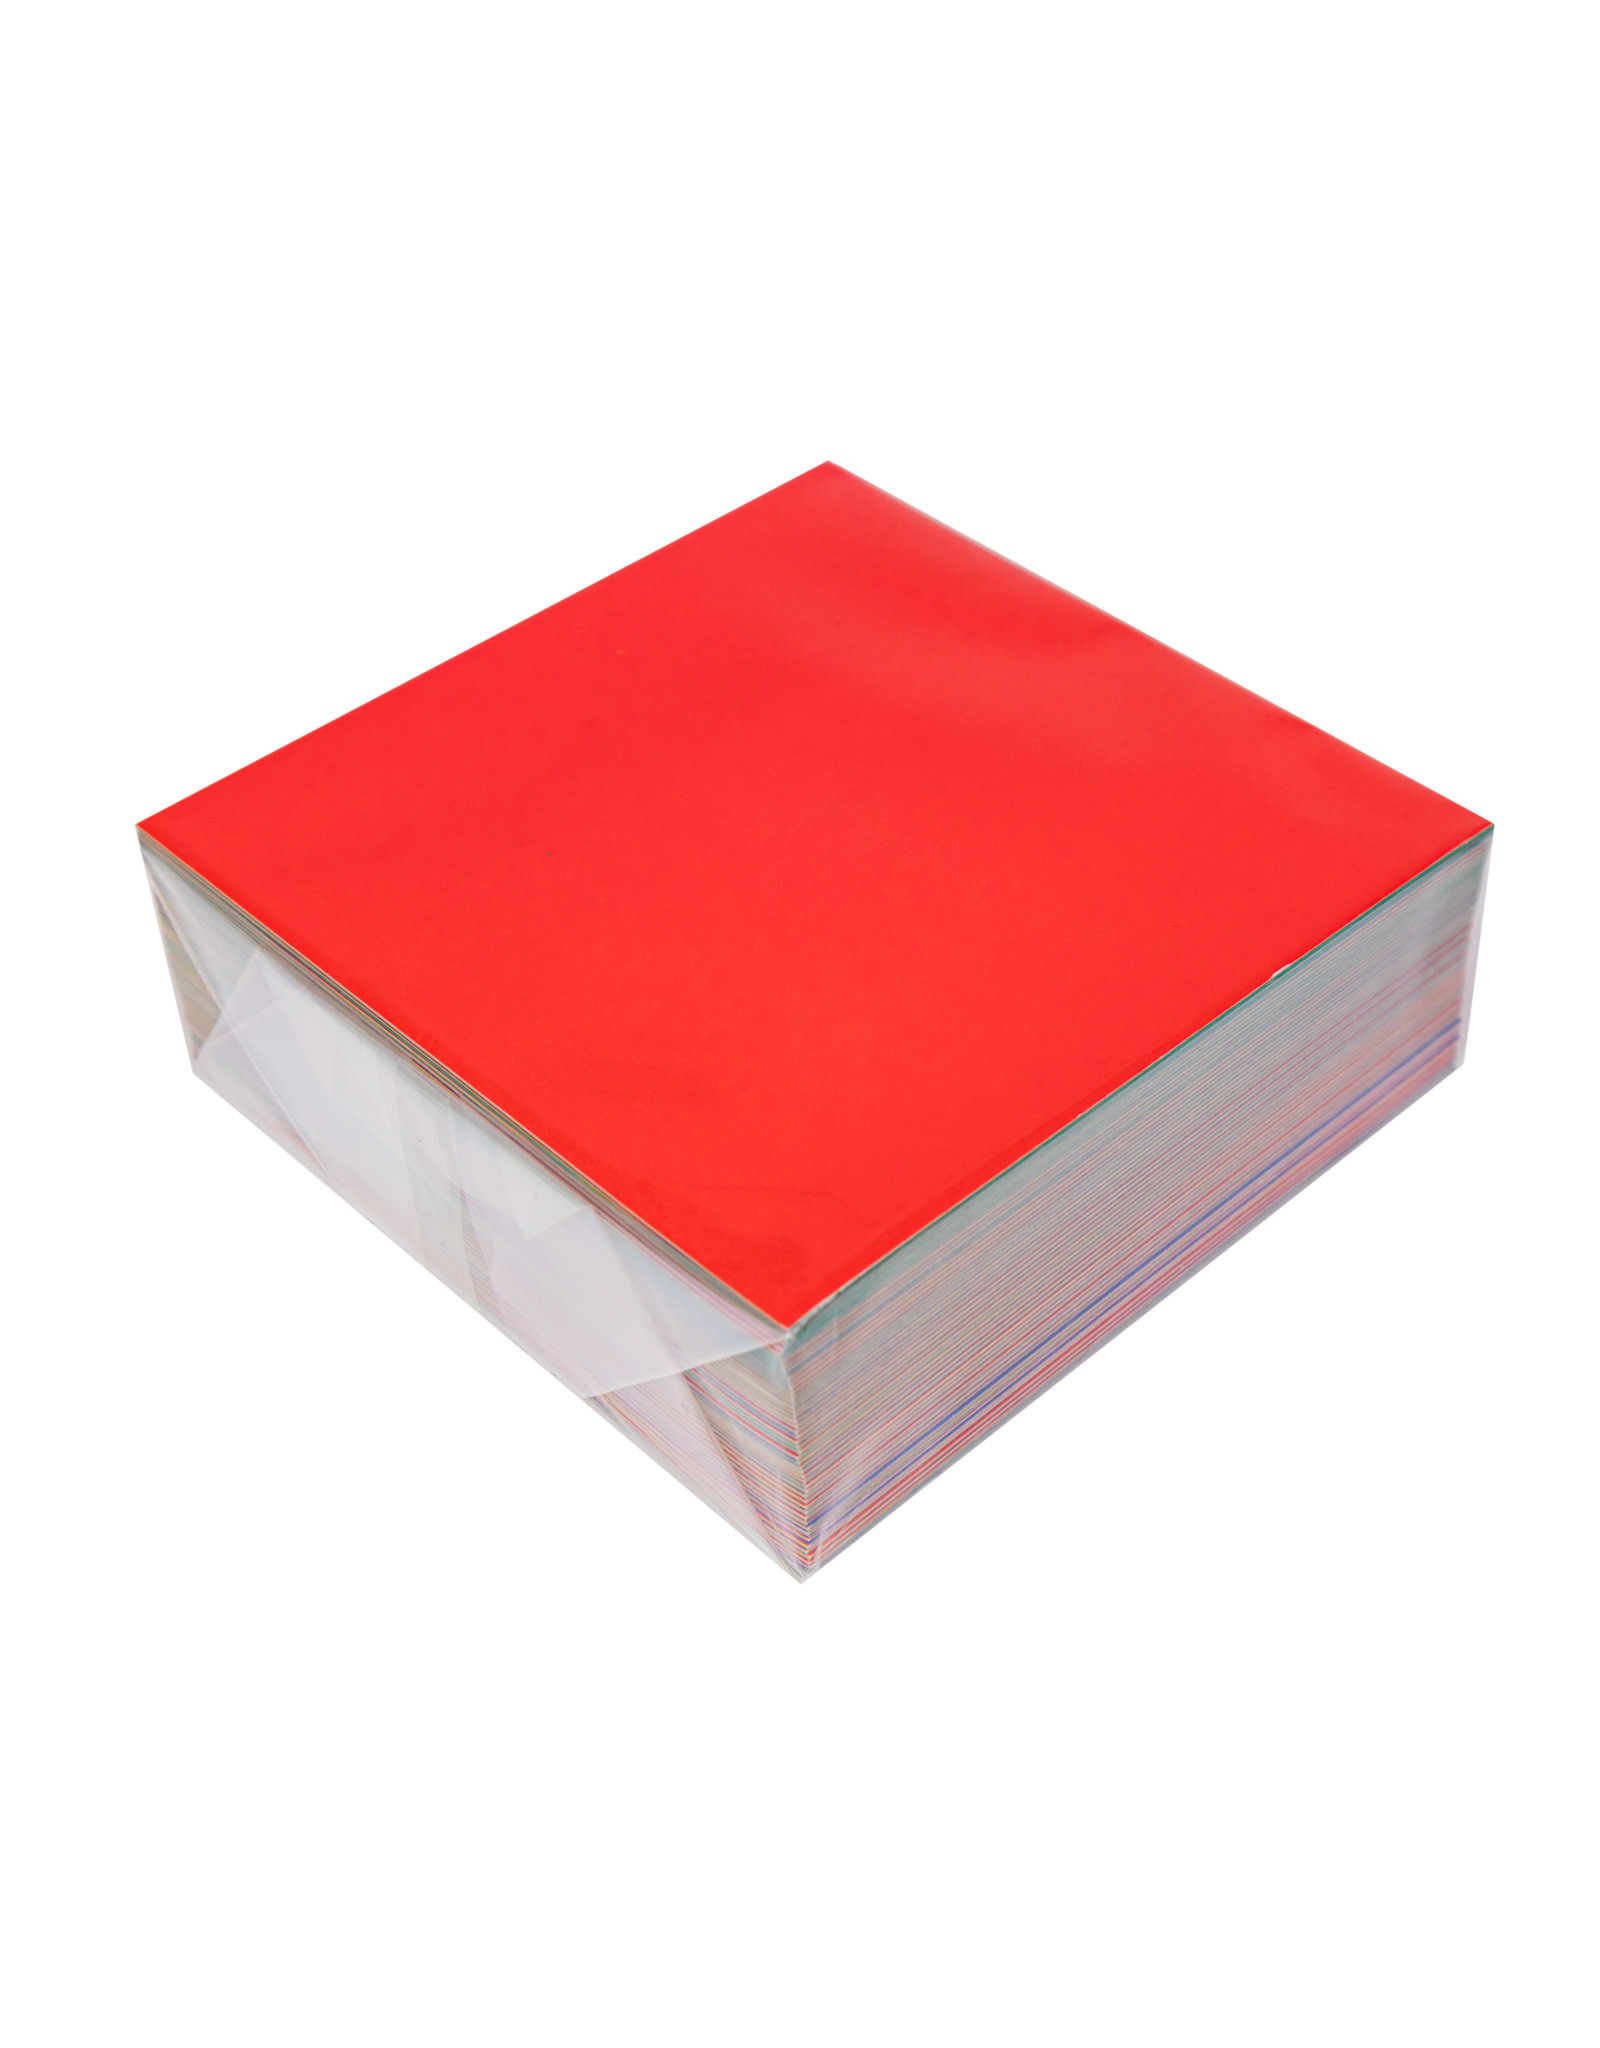 YASUTOMO Origami Value Pack 500 Sheets